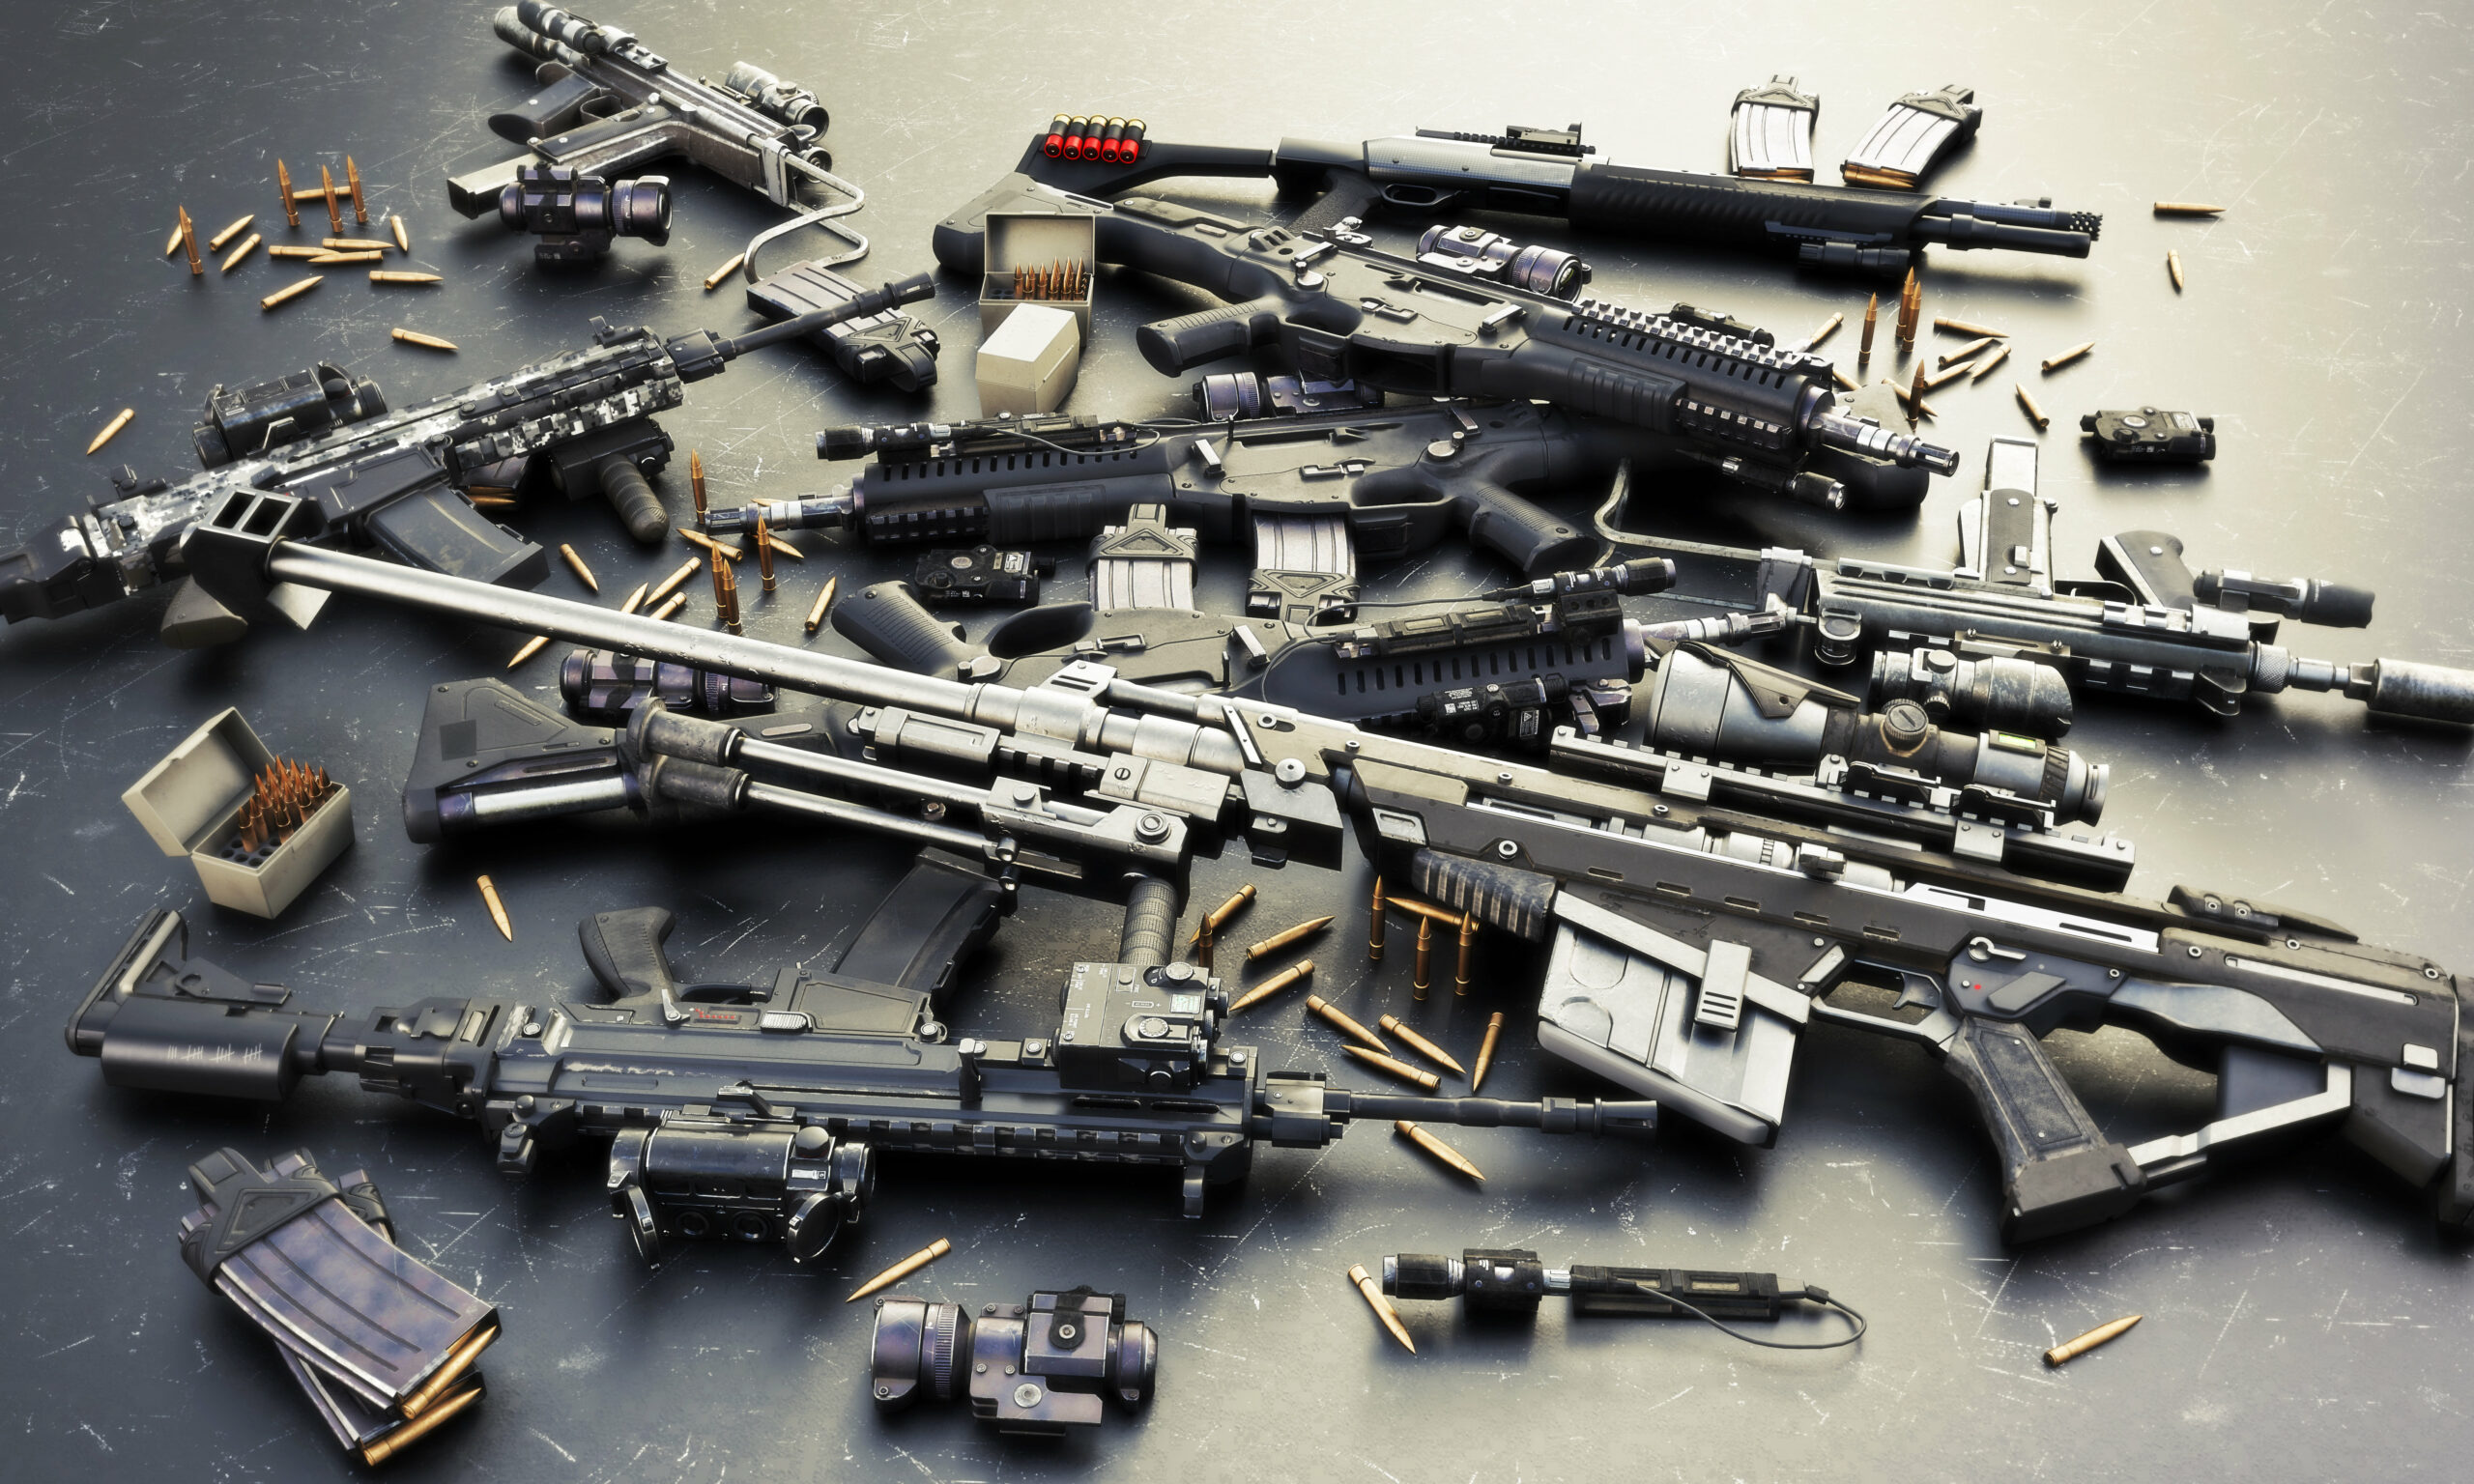 Menos del 2% de las armas incautadas en México salieron legalmente de Estados Unidos